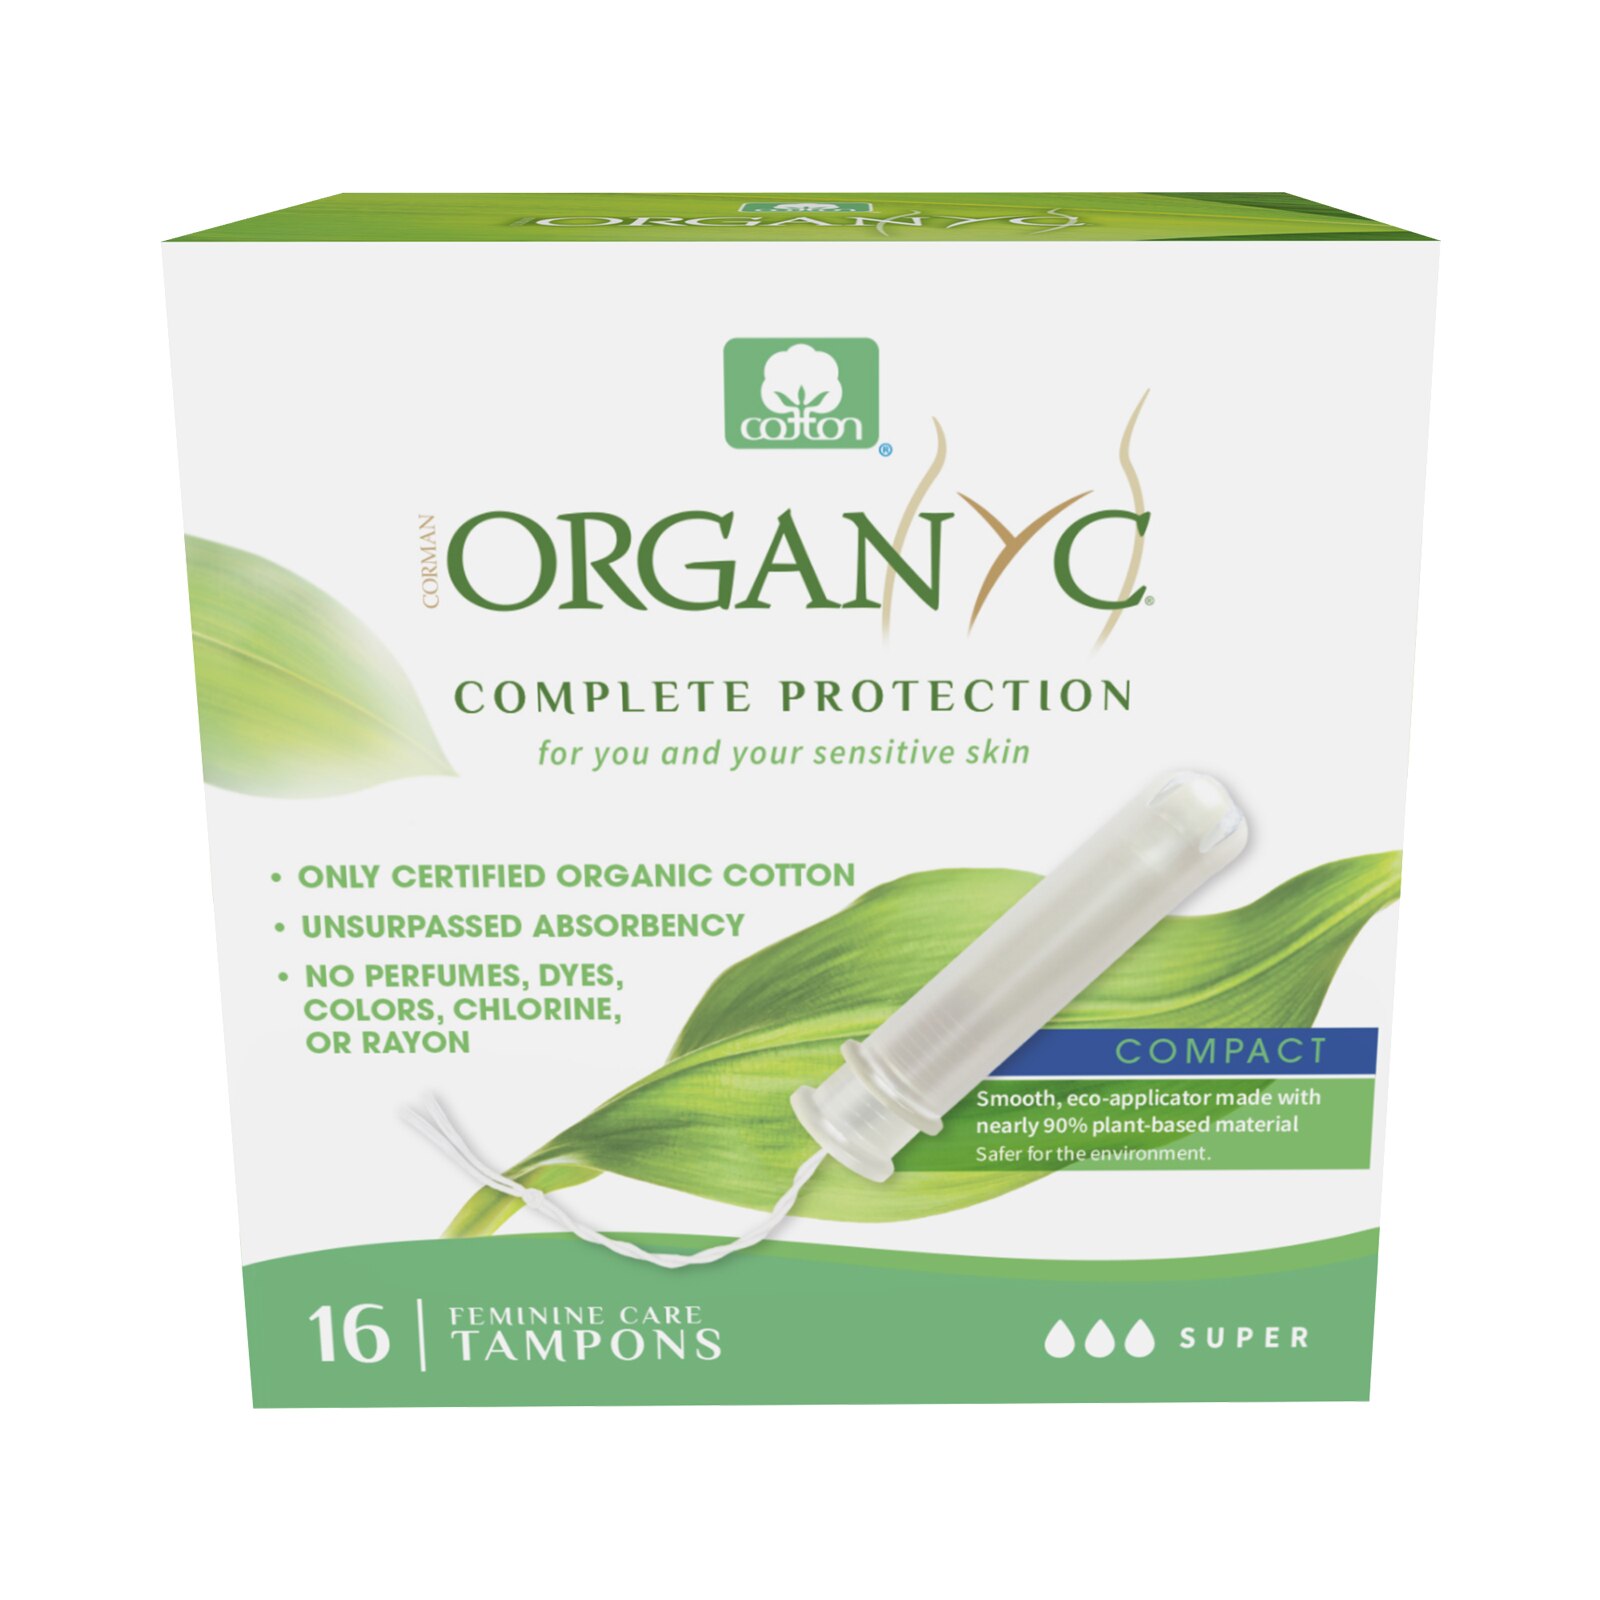 Organyc - Tampones de algodón orgánico para piel sensible con aplicador compacto de material orgánico, Super, 16 u.